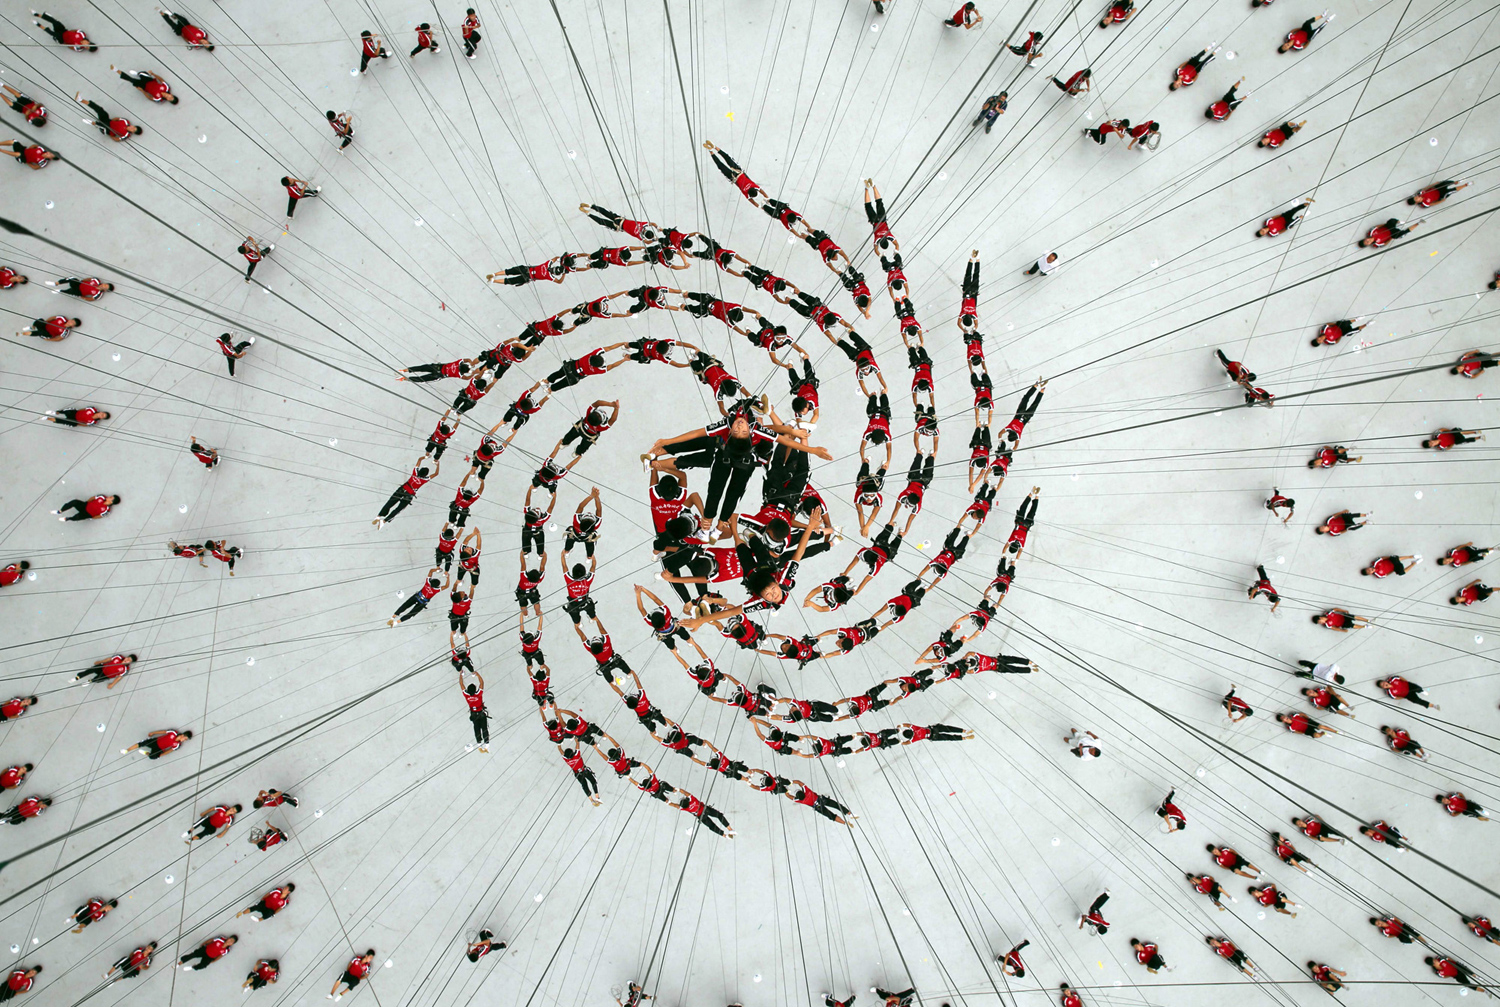 Студентите от Шаолин Tagou Карате клуб са хванати във въздуха, на репетиция за спектакъл на каскадьори на церемонията по откриването на 2014 Nanjing младежки олимпийски игри, на стадиона в Nanjing на 09 август 2014